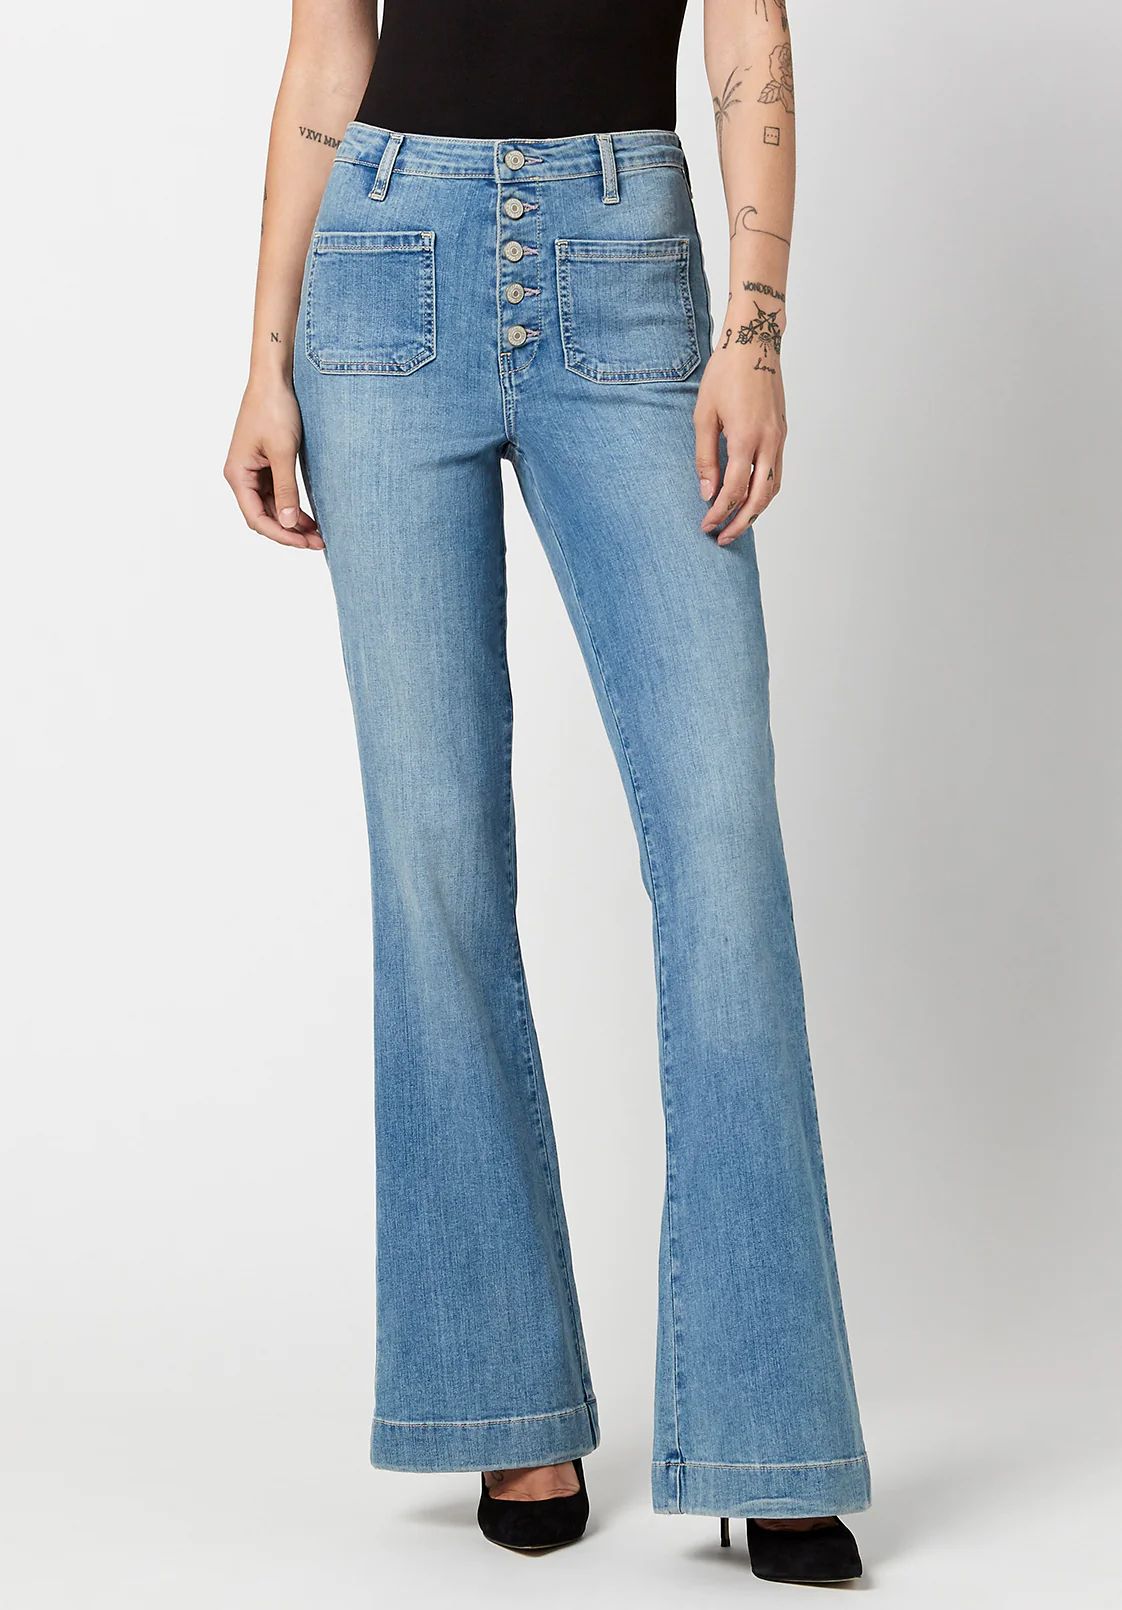 High Rise Flare Joplin Sanded Jeans - BL15821 | Buffalo David Bitton